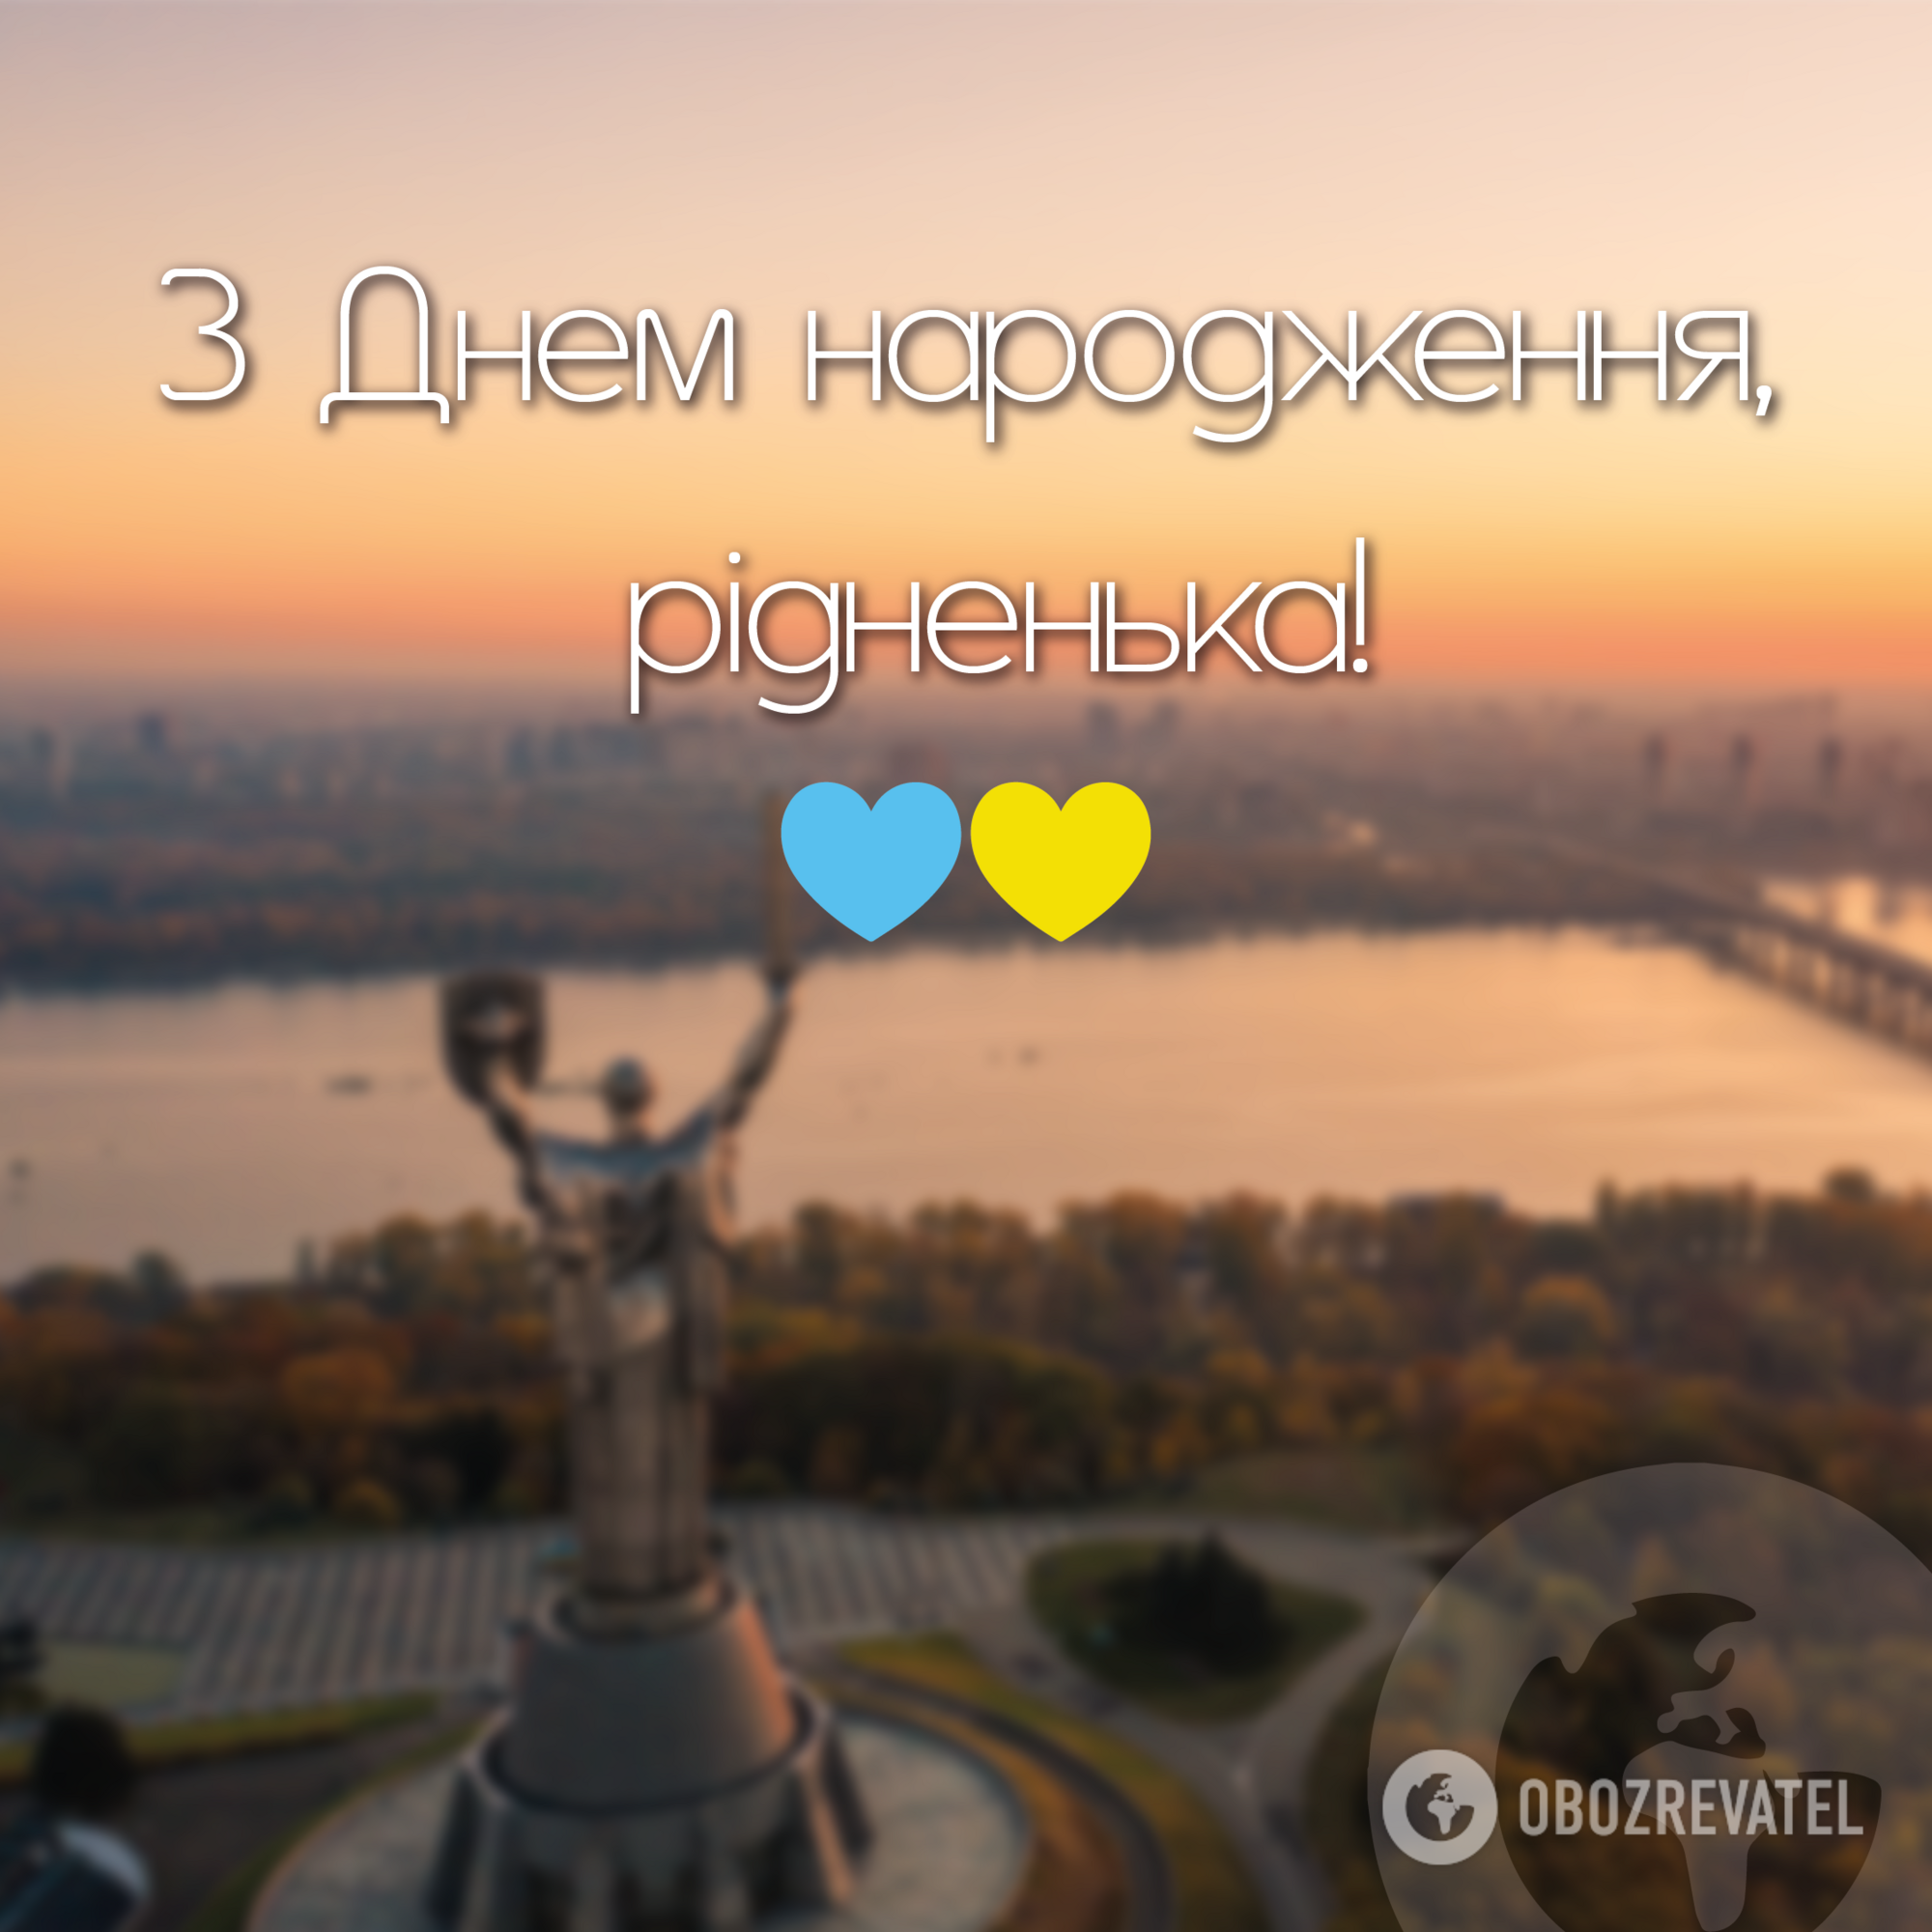 С Днем Независимости! Как поздравить украинцев в условиях войны. Картинки и смс